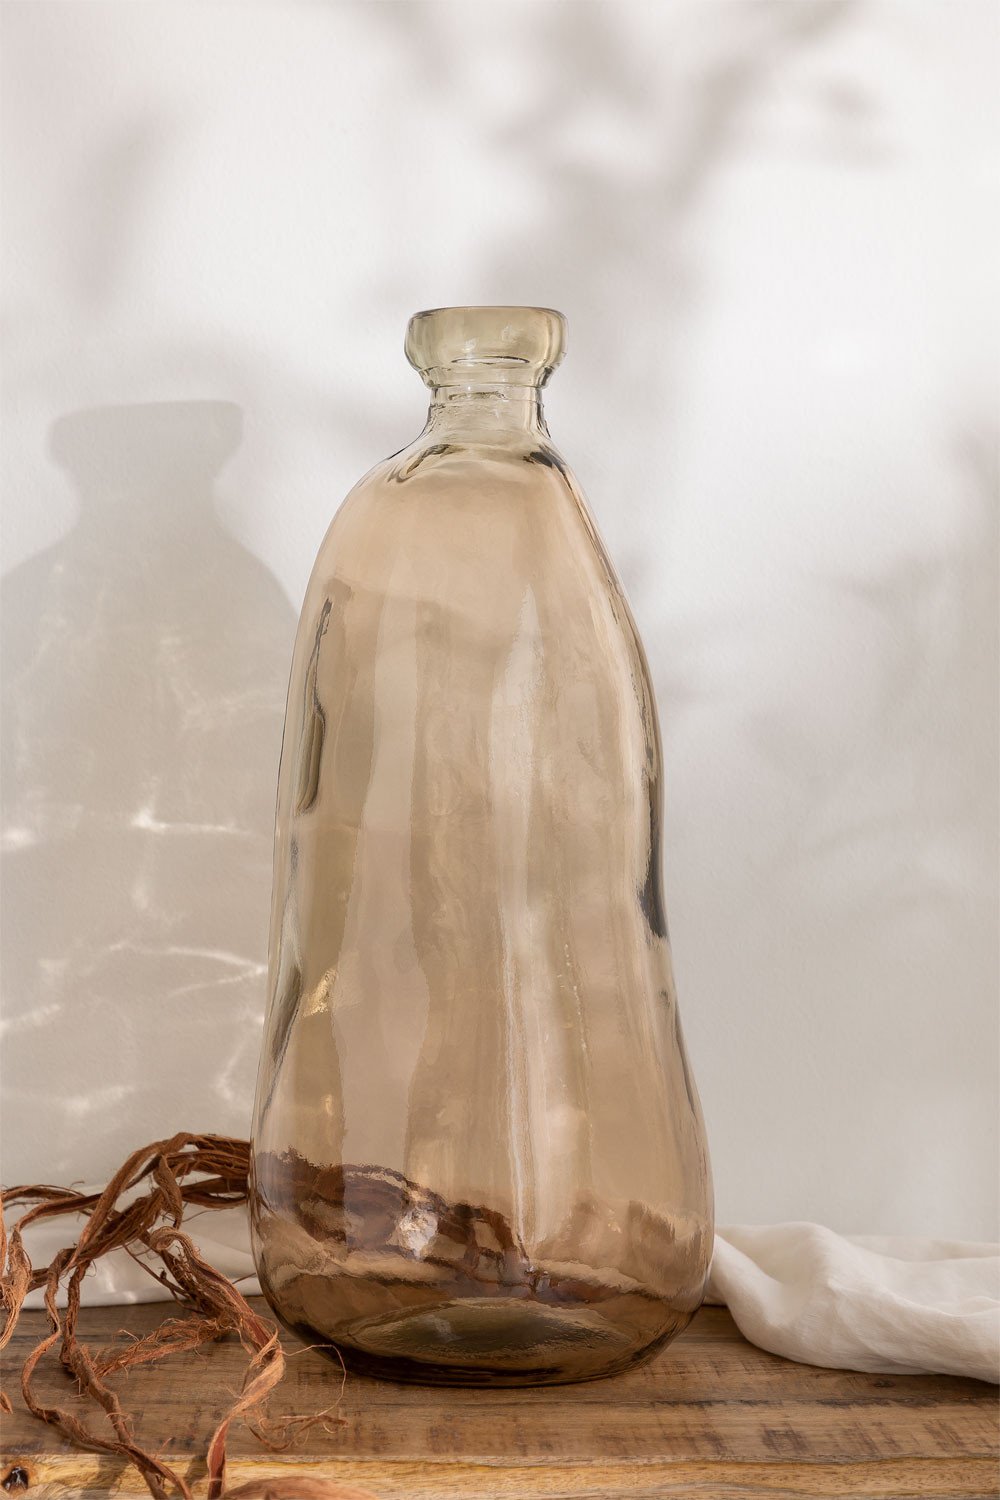 Vaas van gerecycled glas 50 cm Boyte, galerij beeld 1